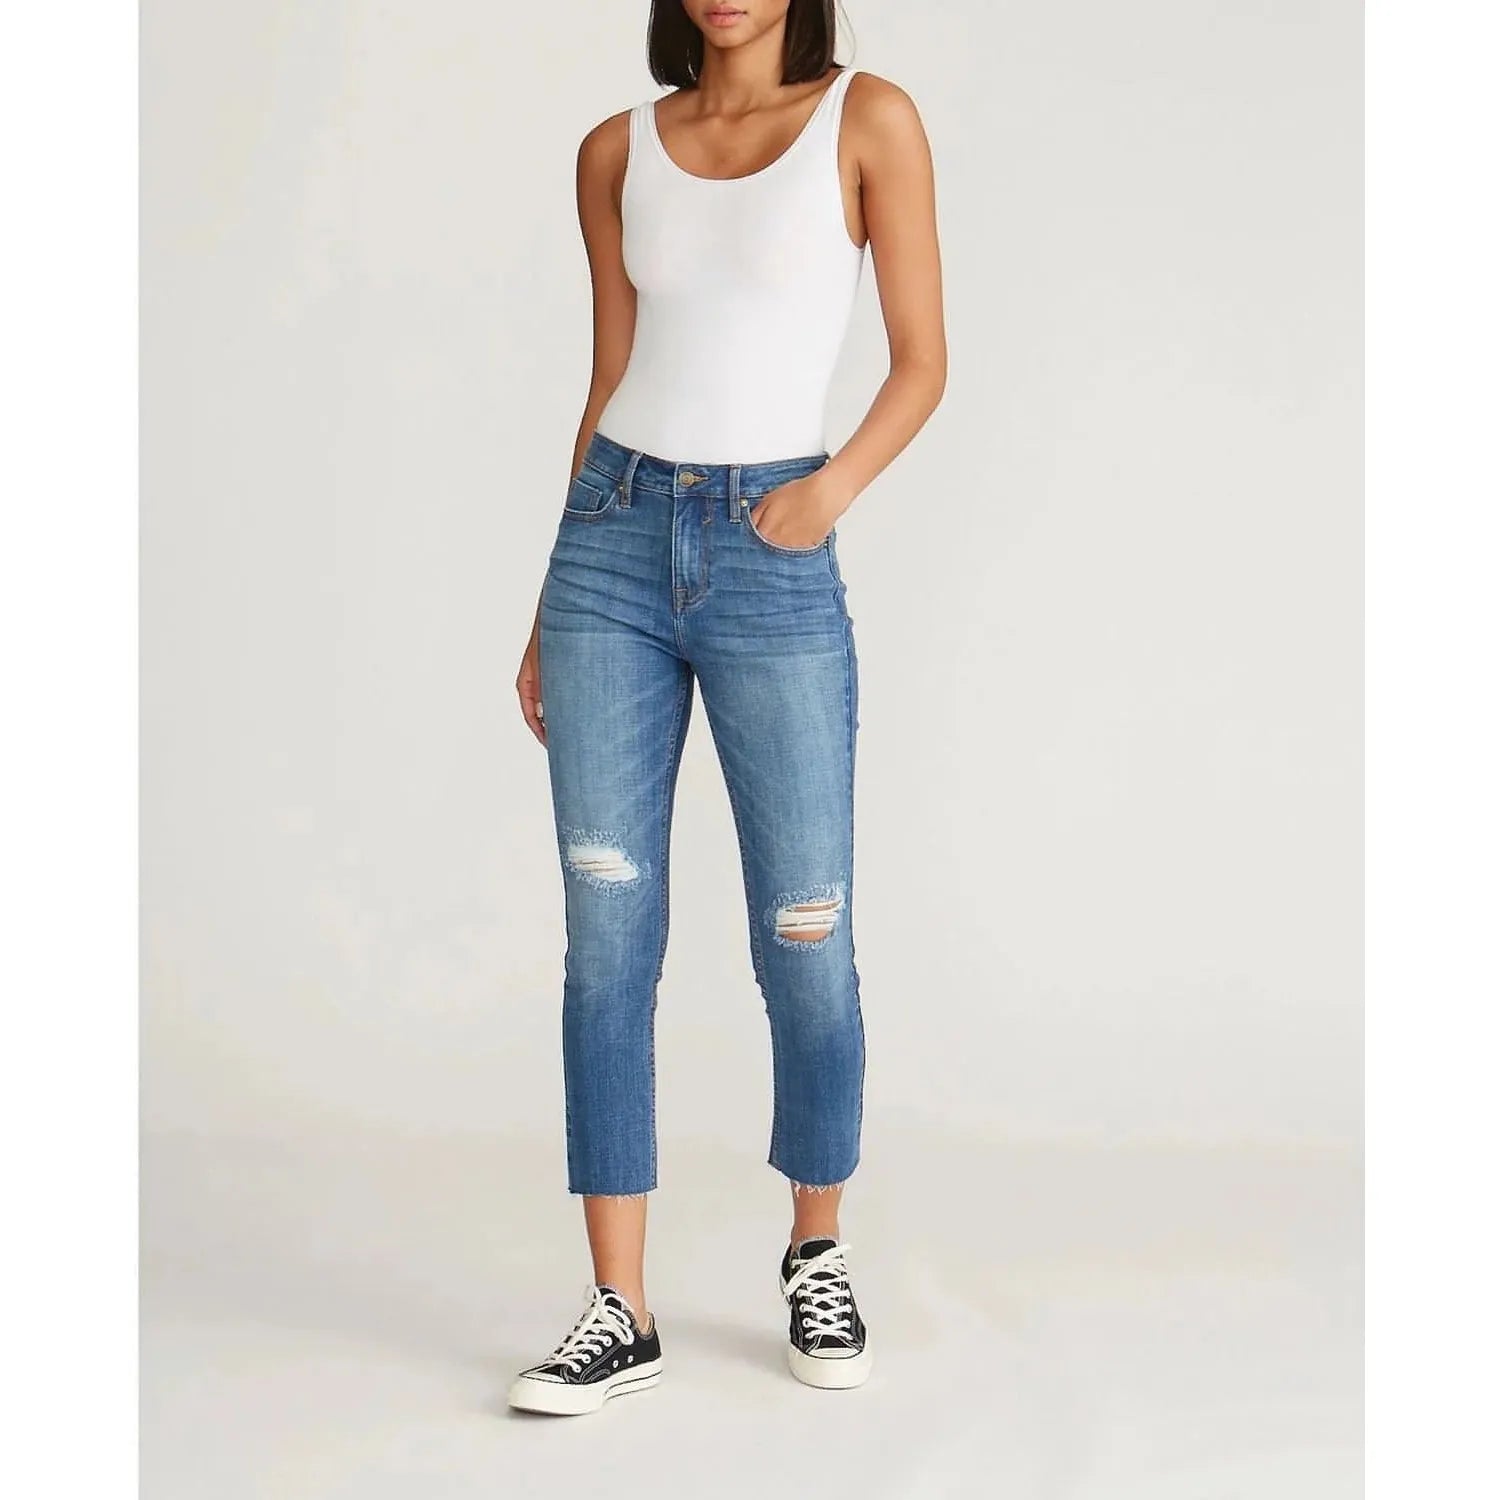 Vigoss Jeans Women's Midrise Crop Straight Jean (Size 32) - Brandat Outlet